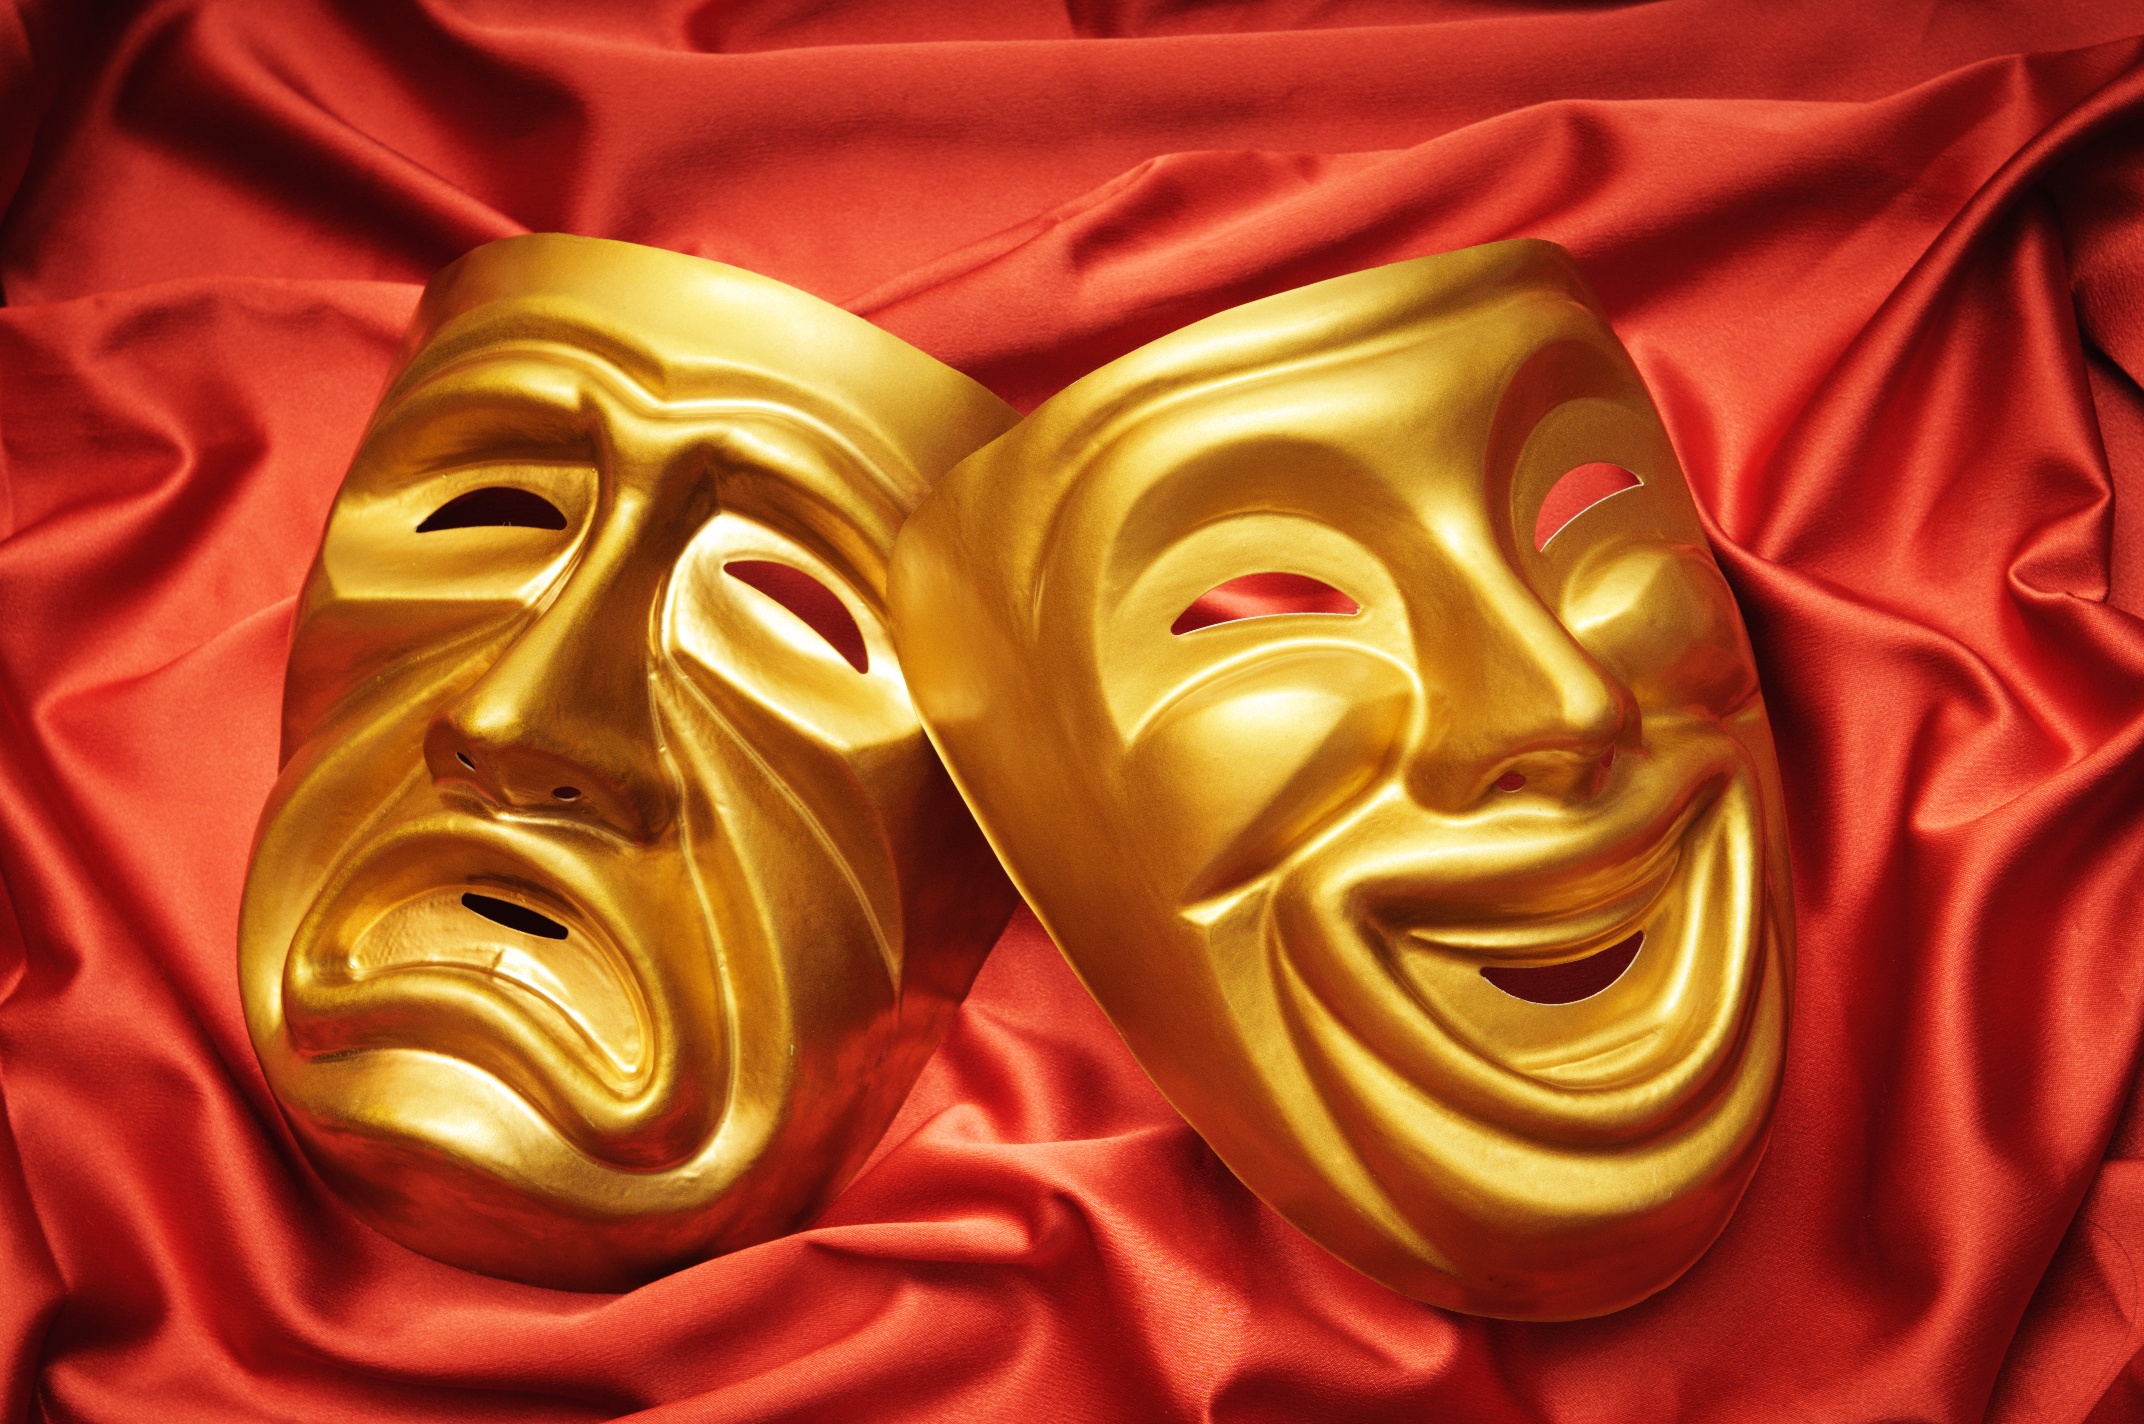 Театральная маска купить. Театральные маски. Маски символ театра. Что такое искусство? Театр. Театральные маски символ театра.